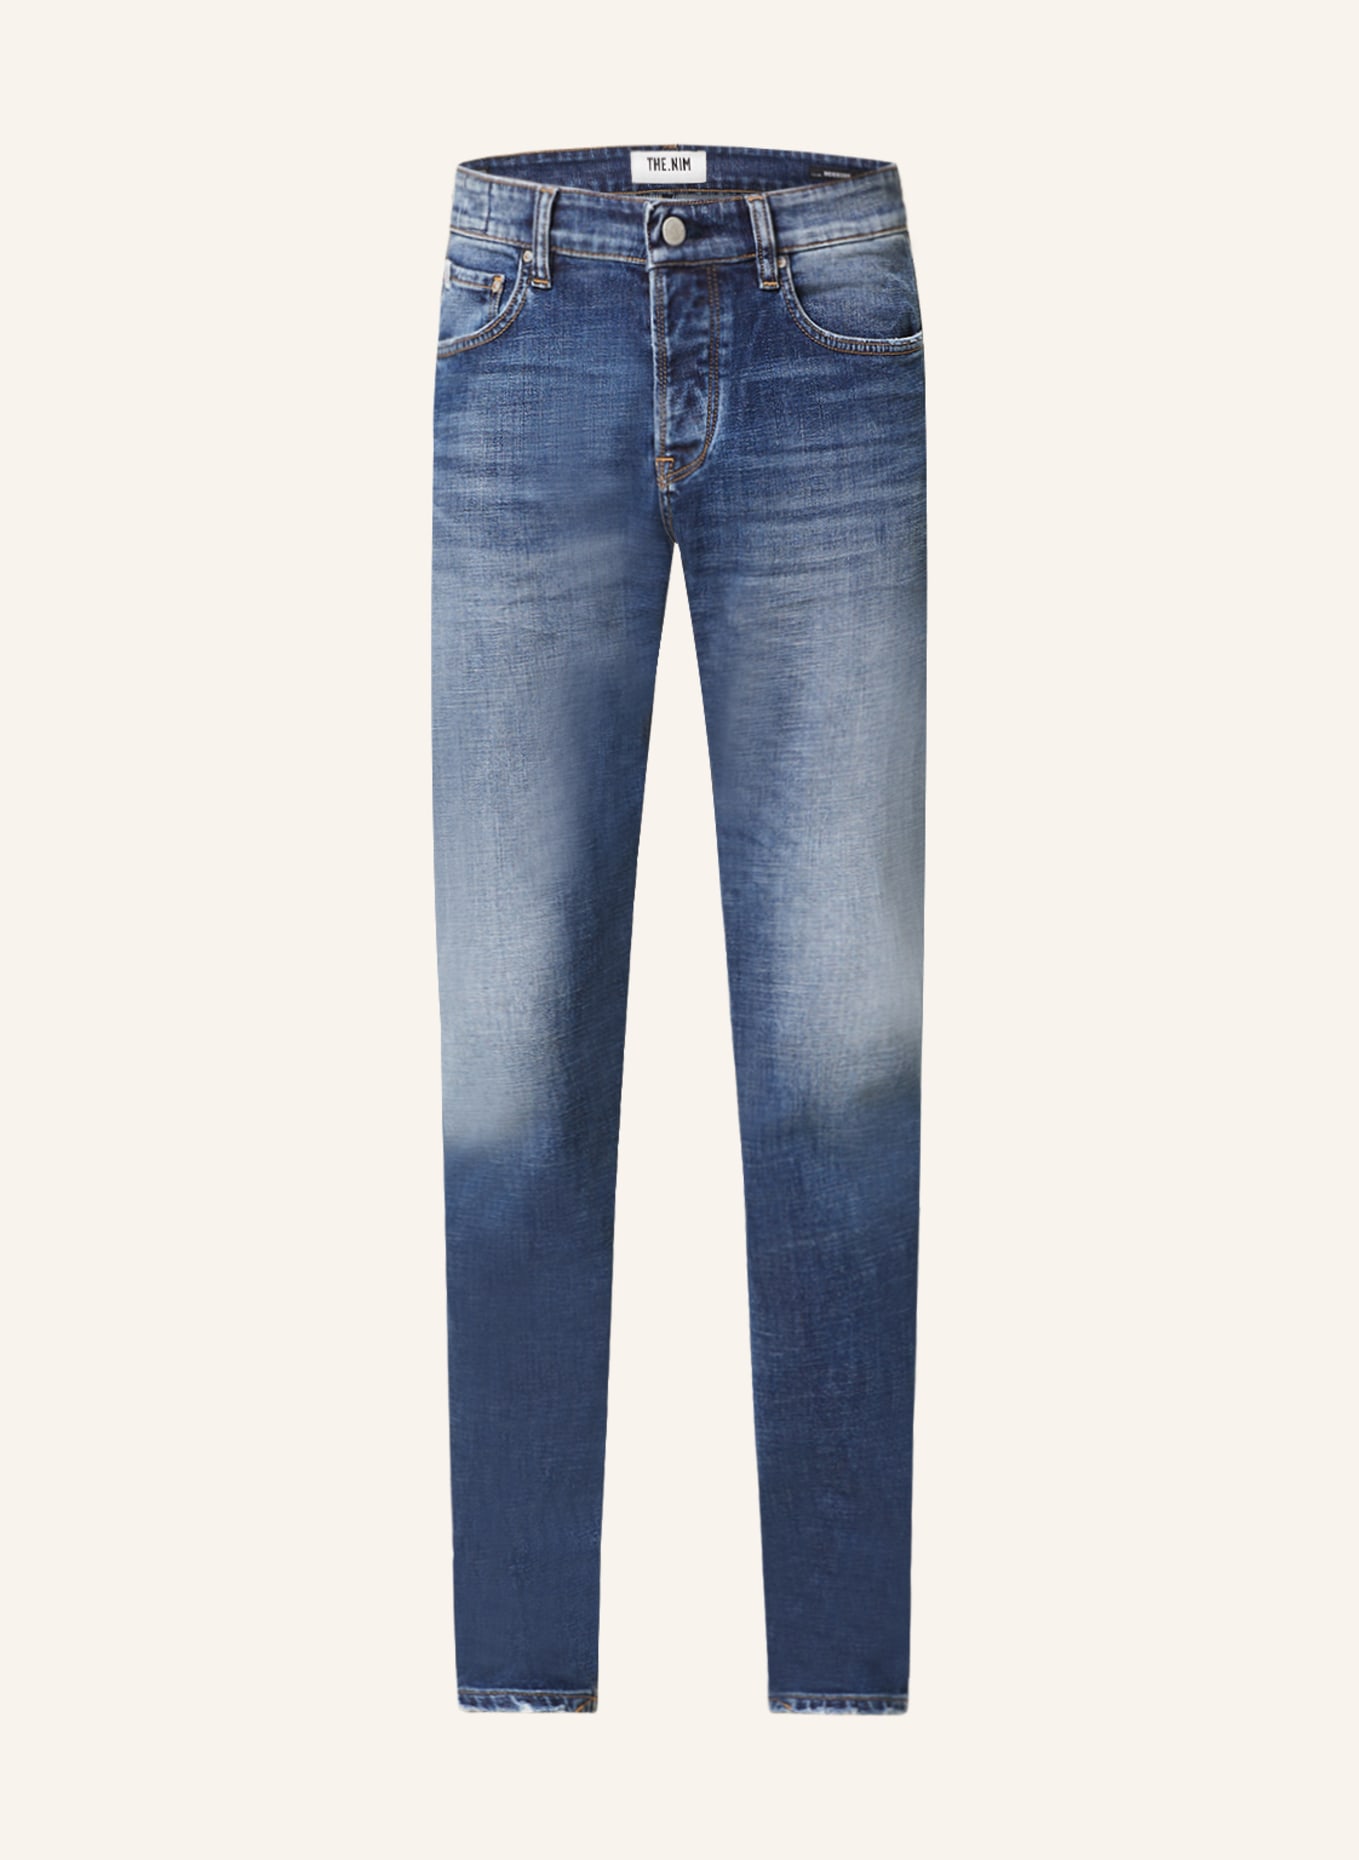 THE.NIM STANDARD Jeans MORRISON Tapered Slim Fit, Farbe: W687-MDB MEDIUM BLUE (Bild 1)